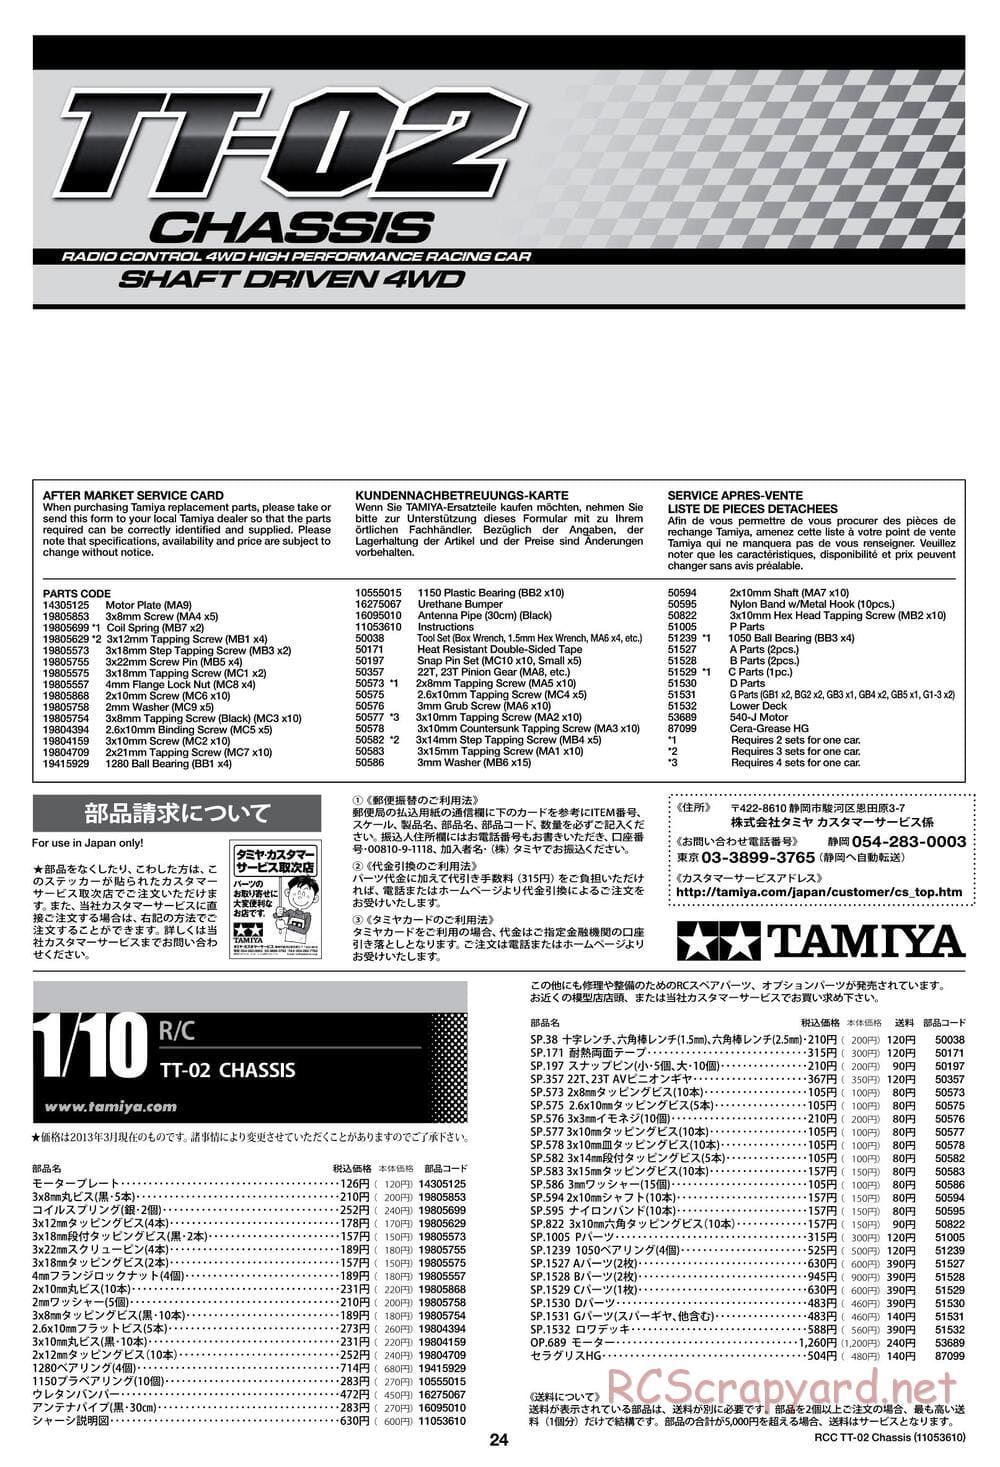 Tamiya - TT-02 Chassis - Manual - Page 24